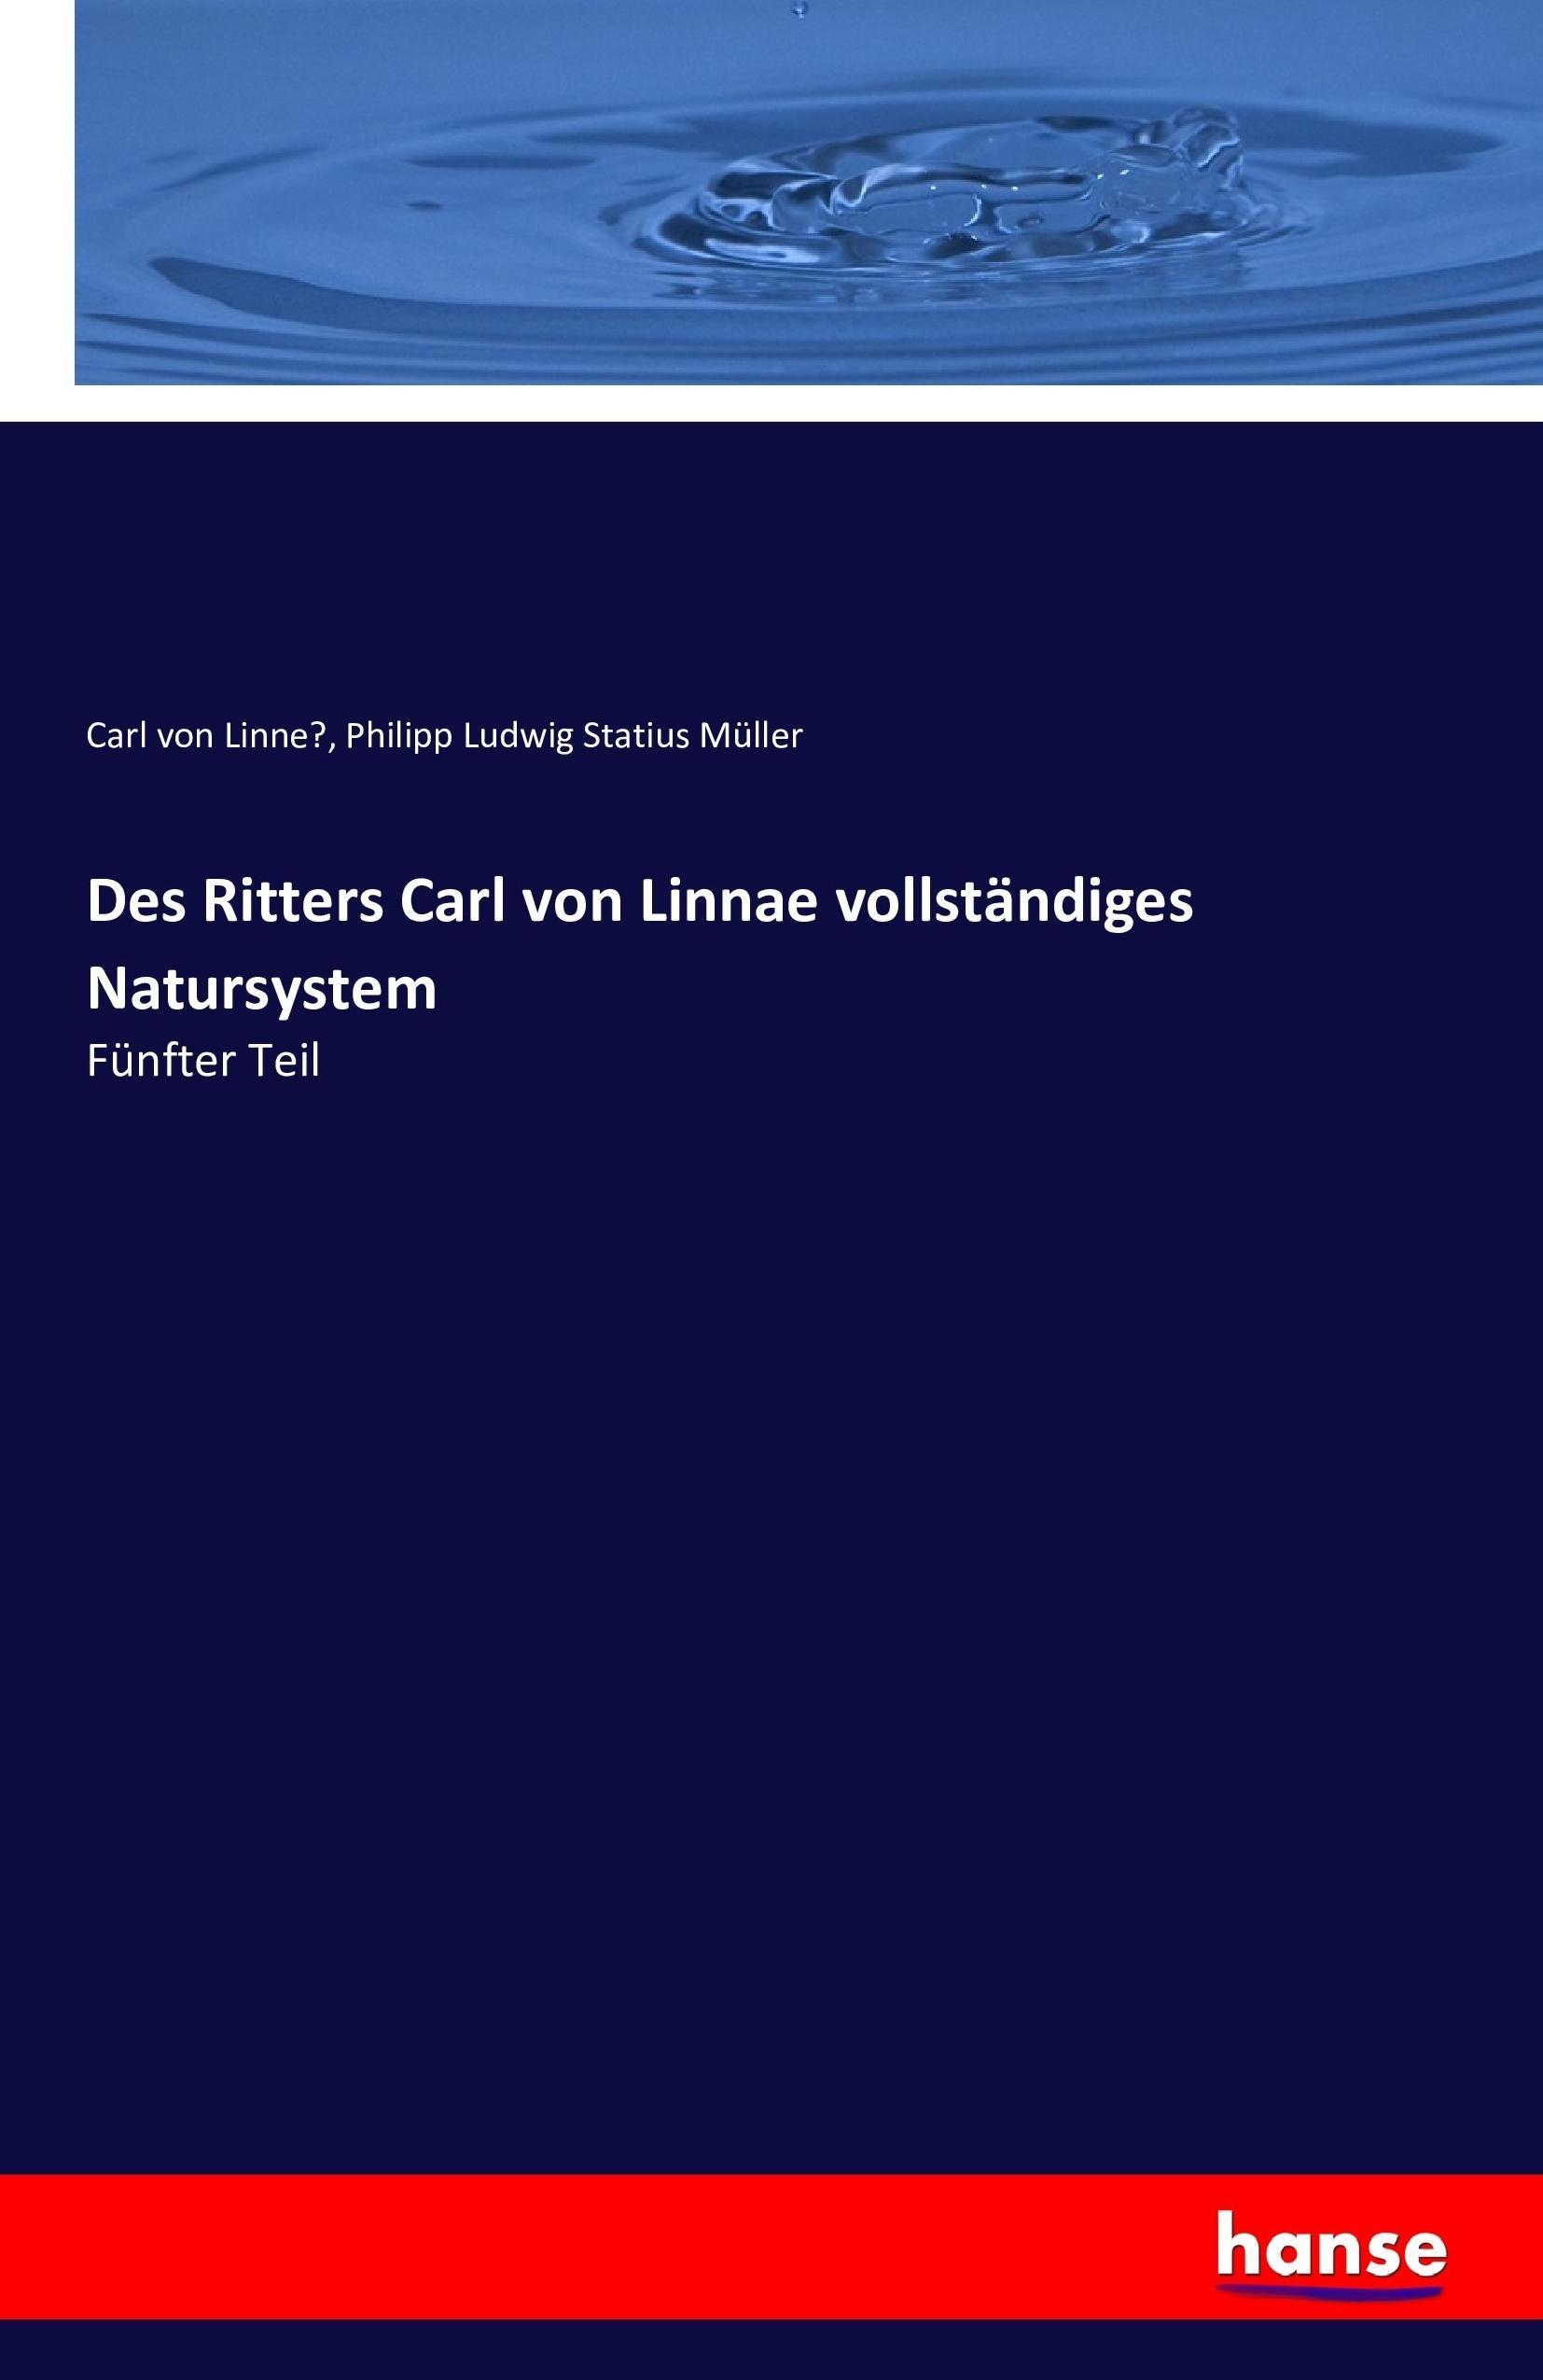 Des Ritters Carl von Linnae vollstaendiges Natursystem - Linné, Carl von Mueller, Philipp Ludwig Statius